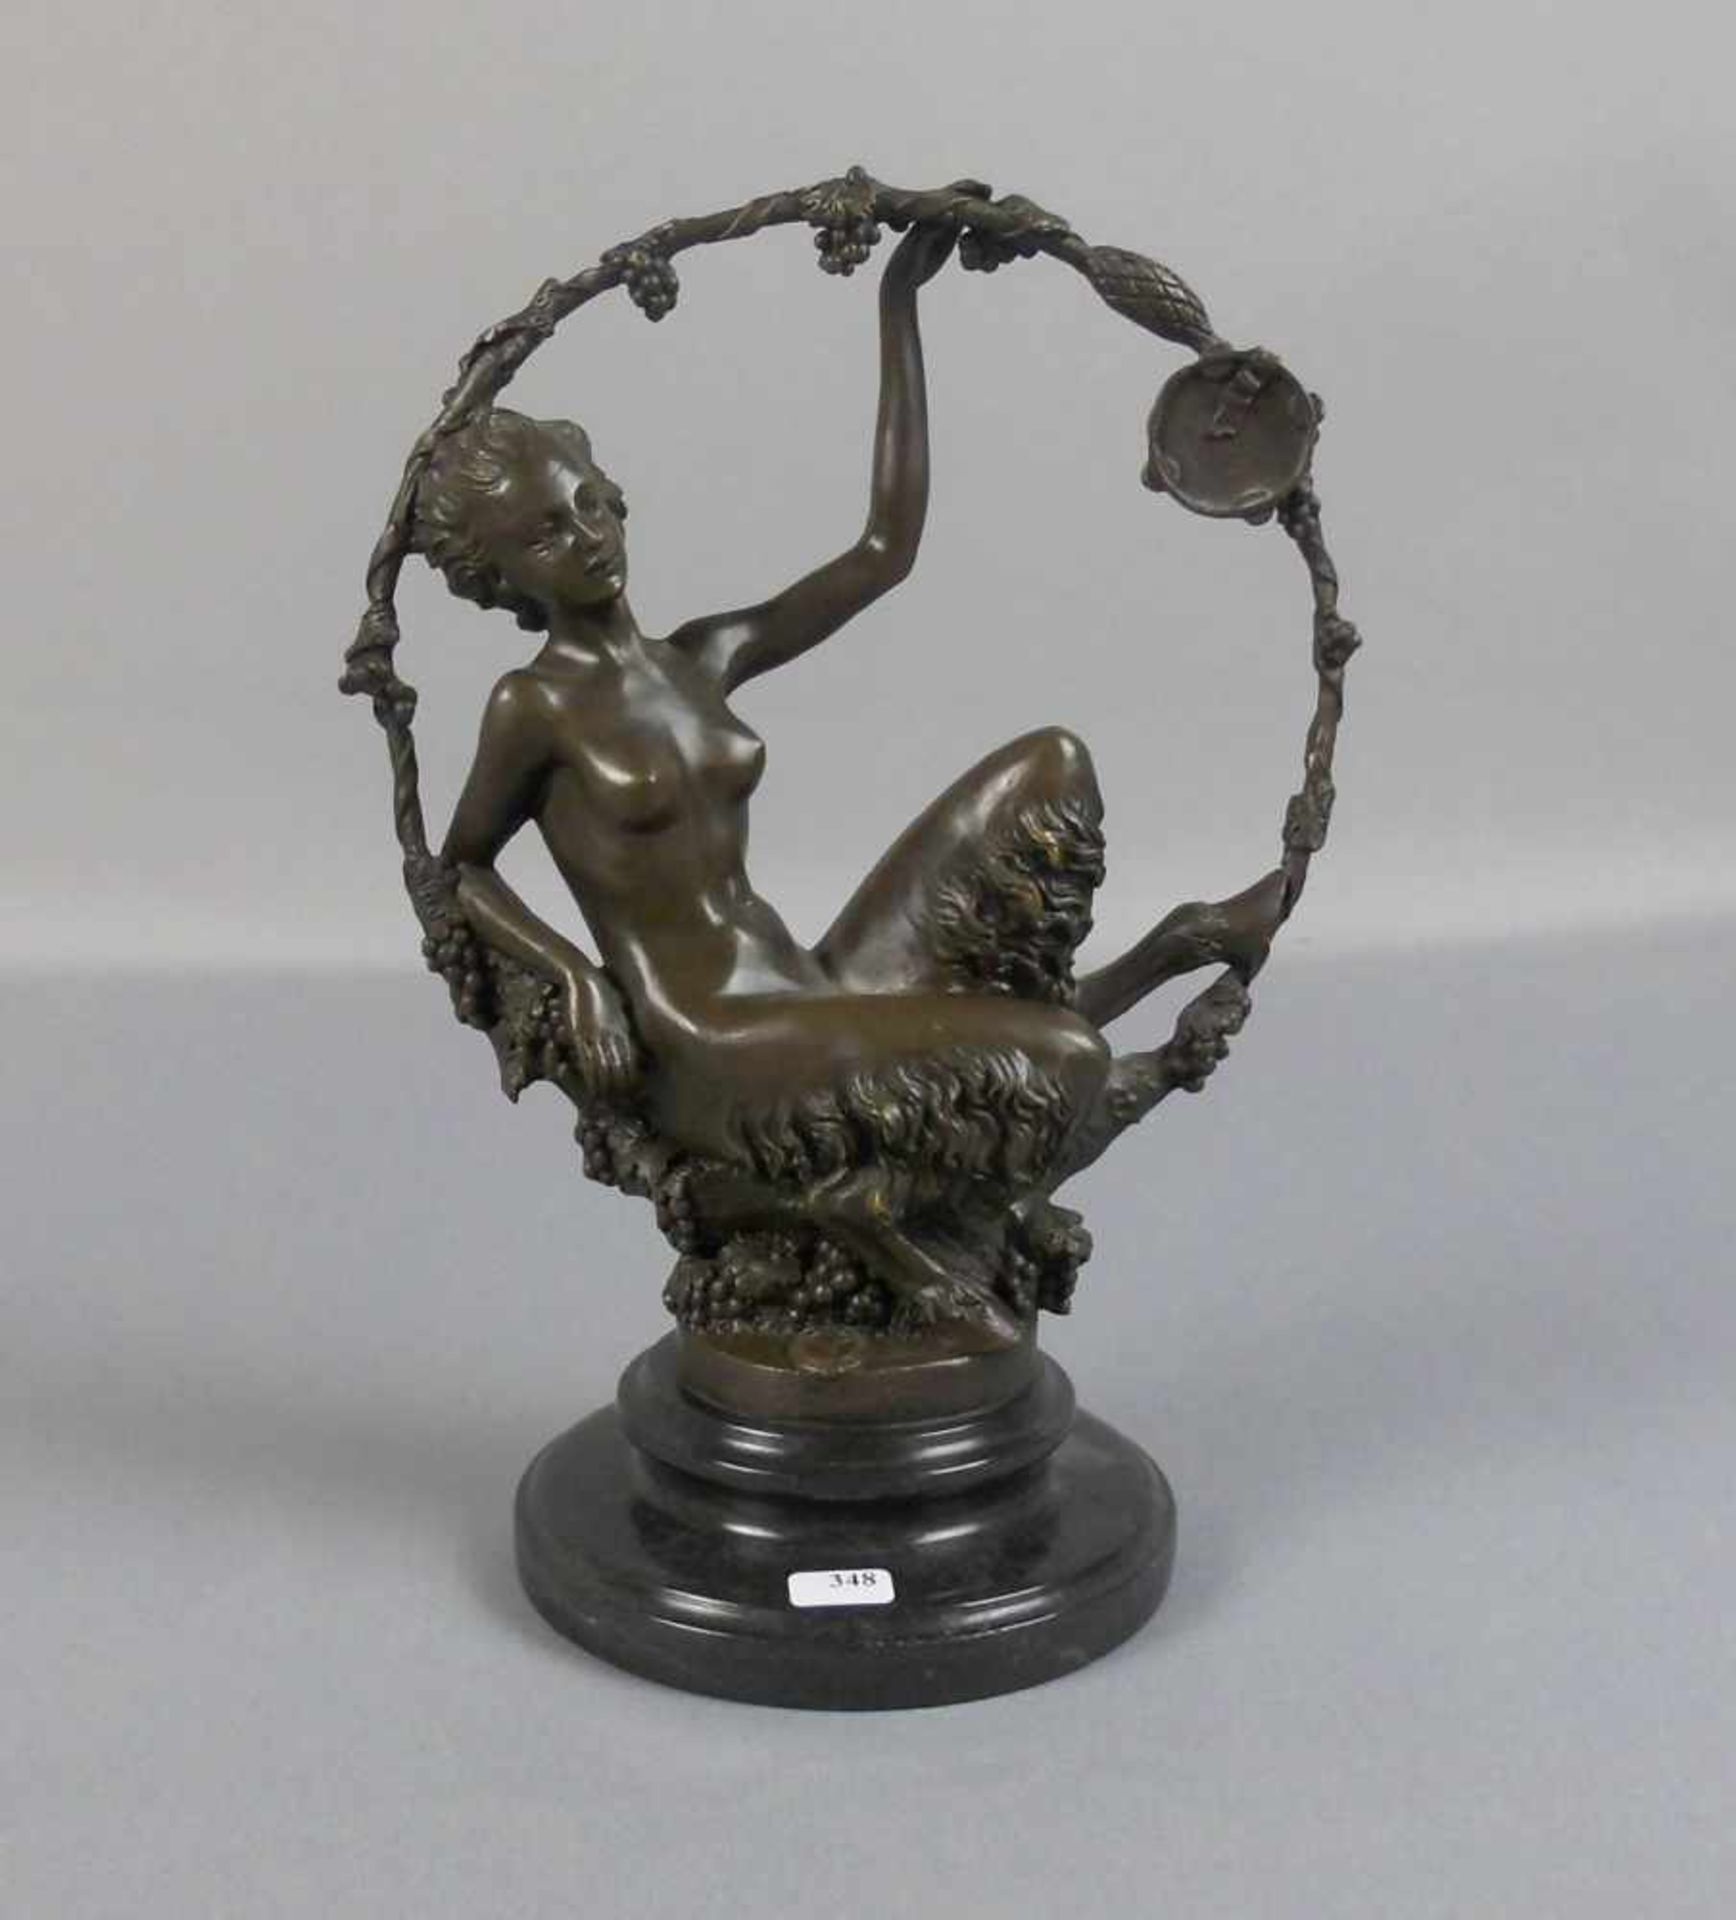 nach BERTEAUX, LÉON (MME HÉLÈNE HÉBERT LÉON BERTAUX, Paris 1825-1908 ebd.), Skulptur / sculpture: "